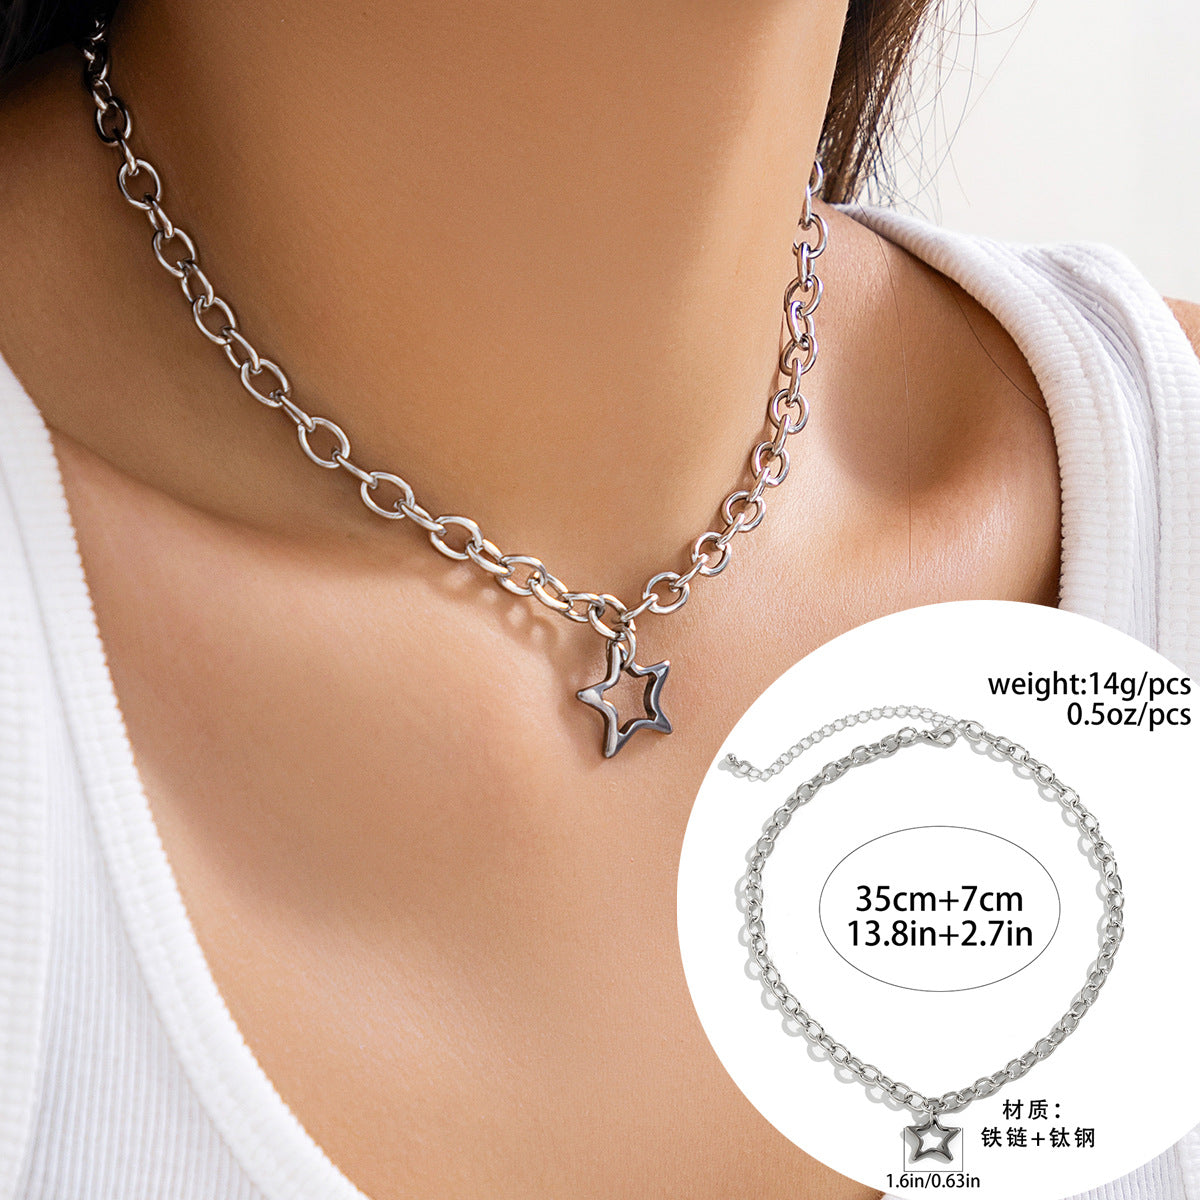 Elegant Titanium Steel Star Necklace with Chic Geometric Pendant